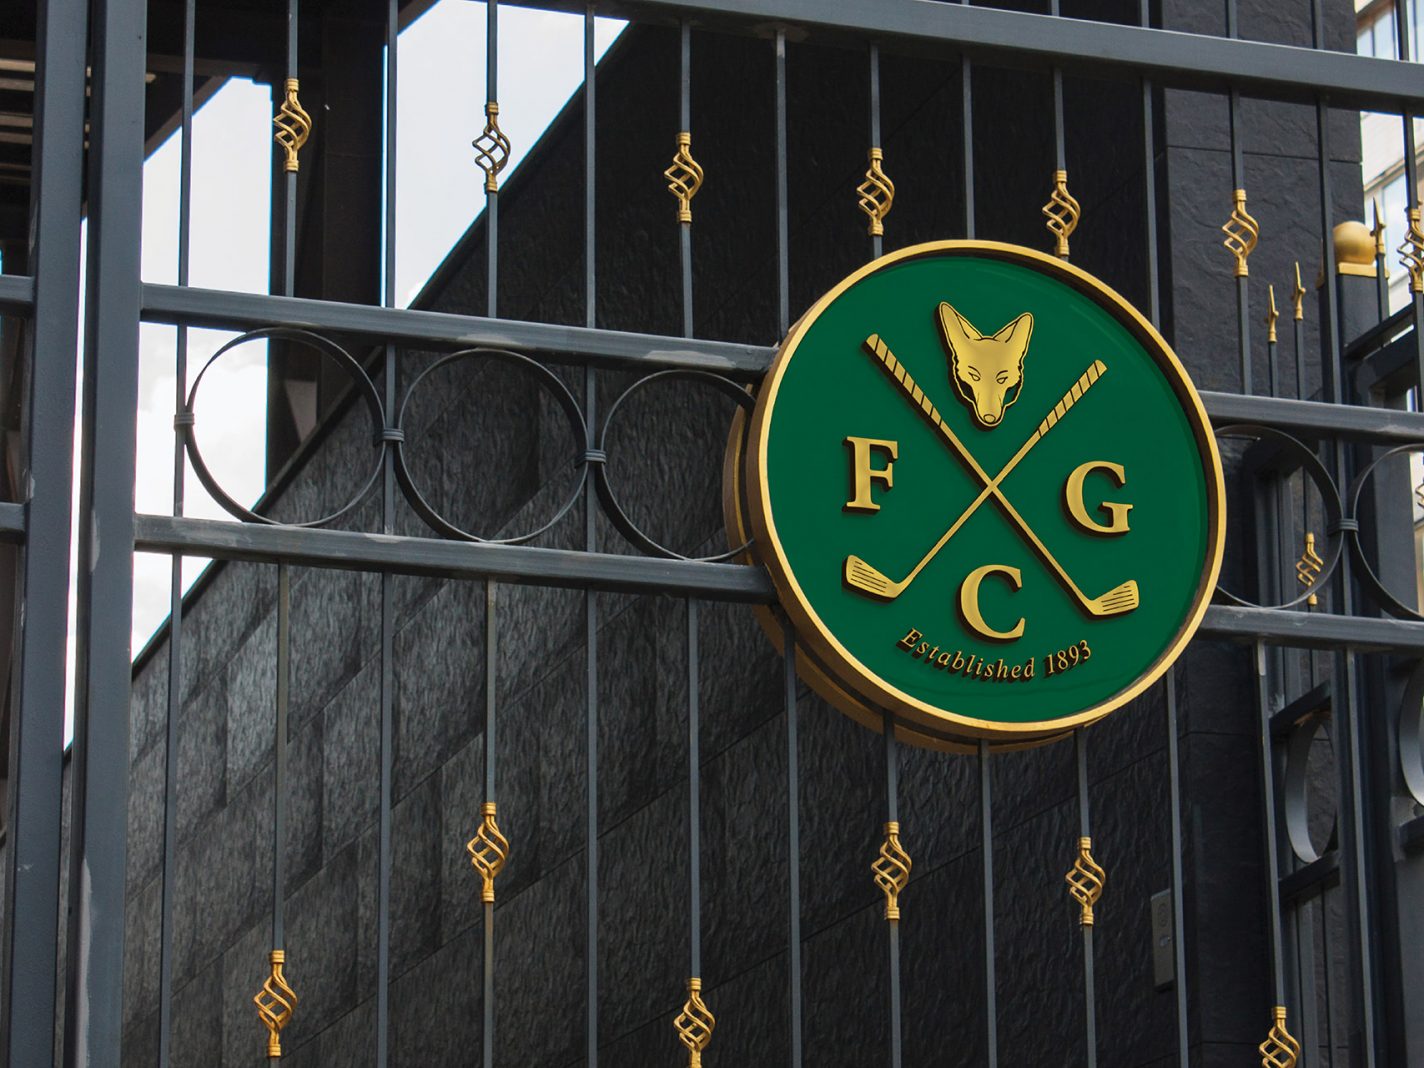 Foxrock Golf Club Gate Signage